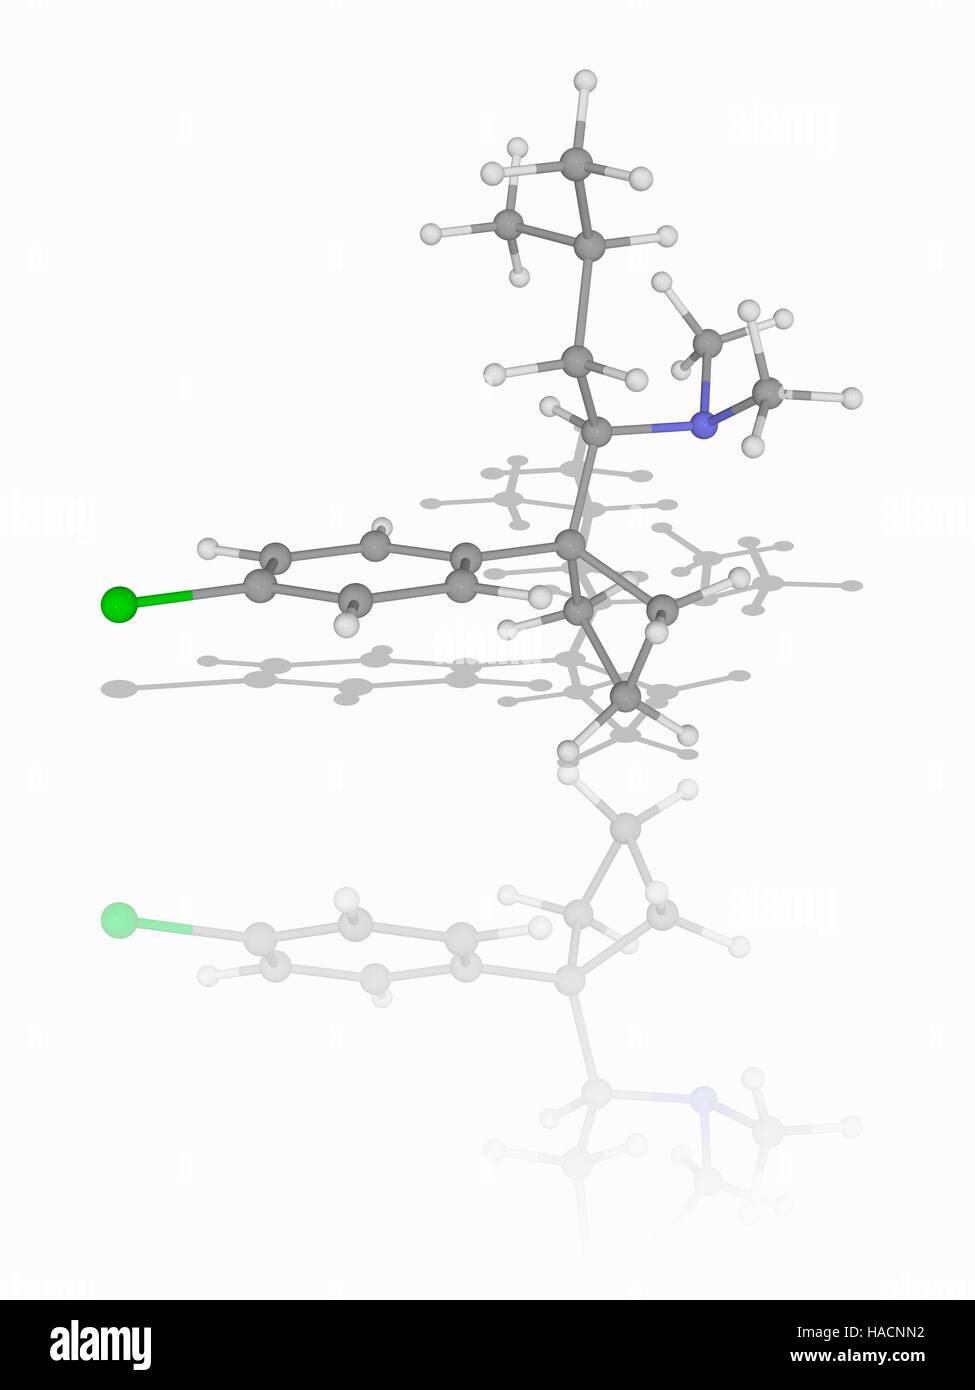 Sibutramin. Molekulares Modell des Medikament Sibutramin (C17.H26.Cl.N), orale Appetitzügler fungiert als Neurotransmitter Reuptake-Inhibitor und zur Behandlung von Fettleibigkeit eingesetzt. Atome als Kugeln dargestellt werden und sind farblich gekennzeichnet: Kohlenstoff (grau), Wasserstoff (weiß), Stickstoff (blau) und Chlor (grün). Abbildung. Stockfoto